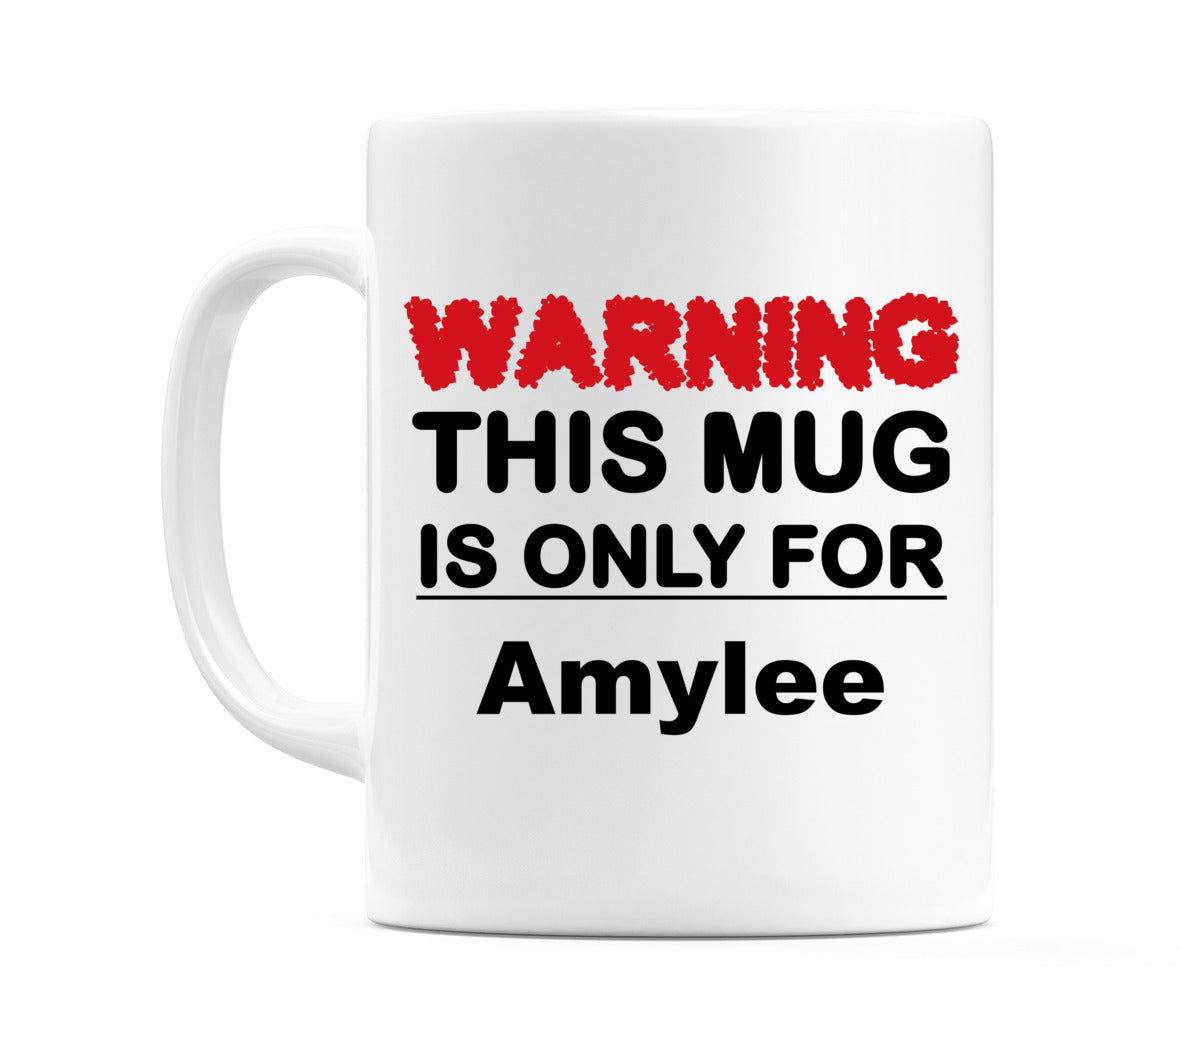 Warning This Mug is ONLY for Amylee Mug